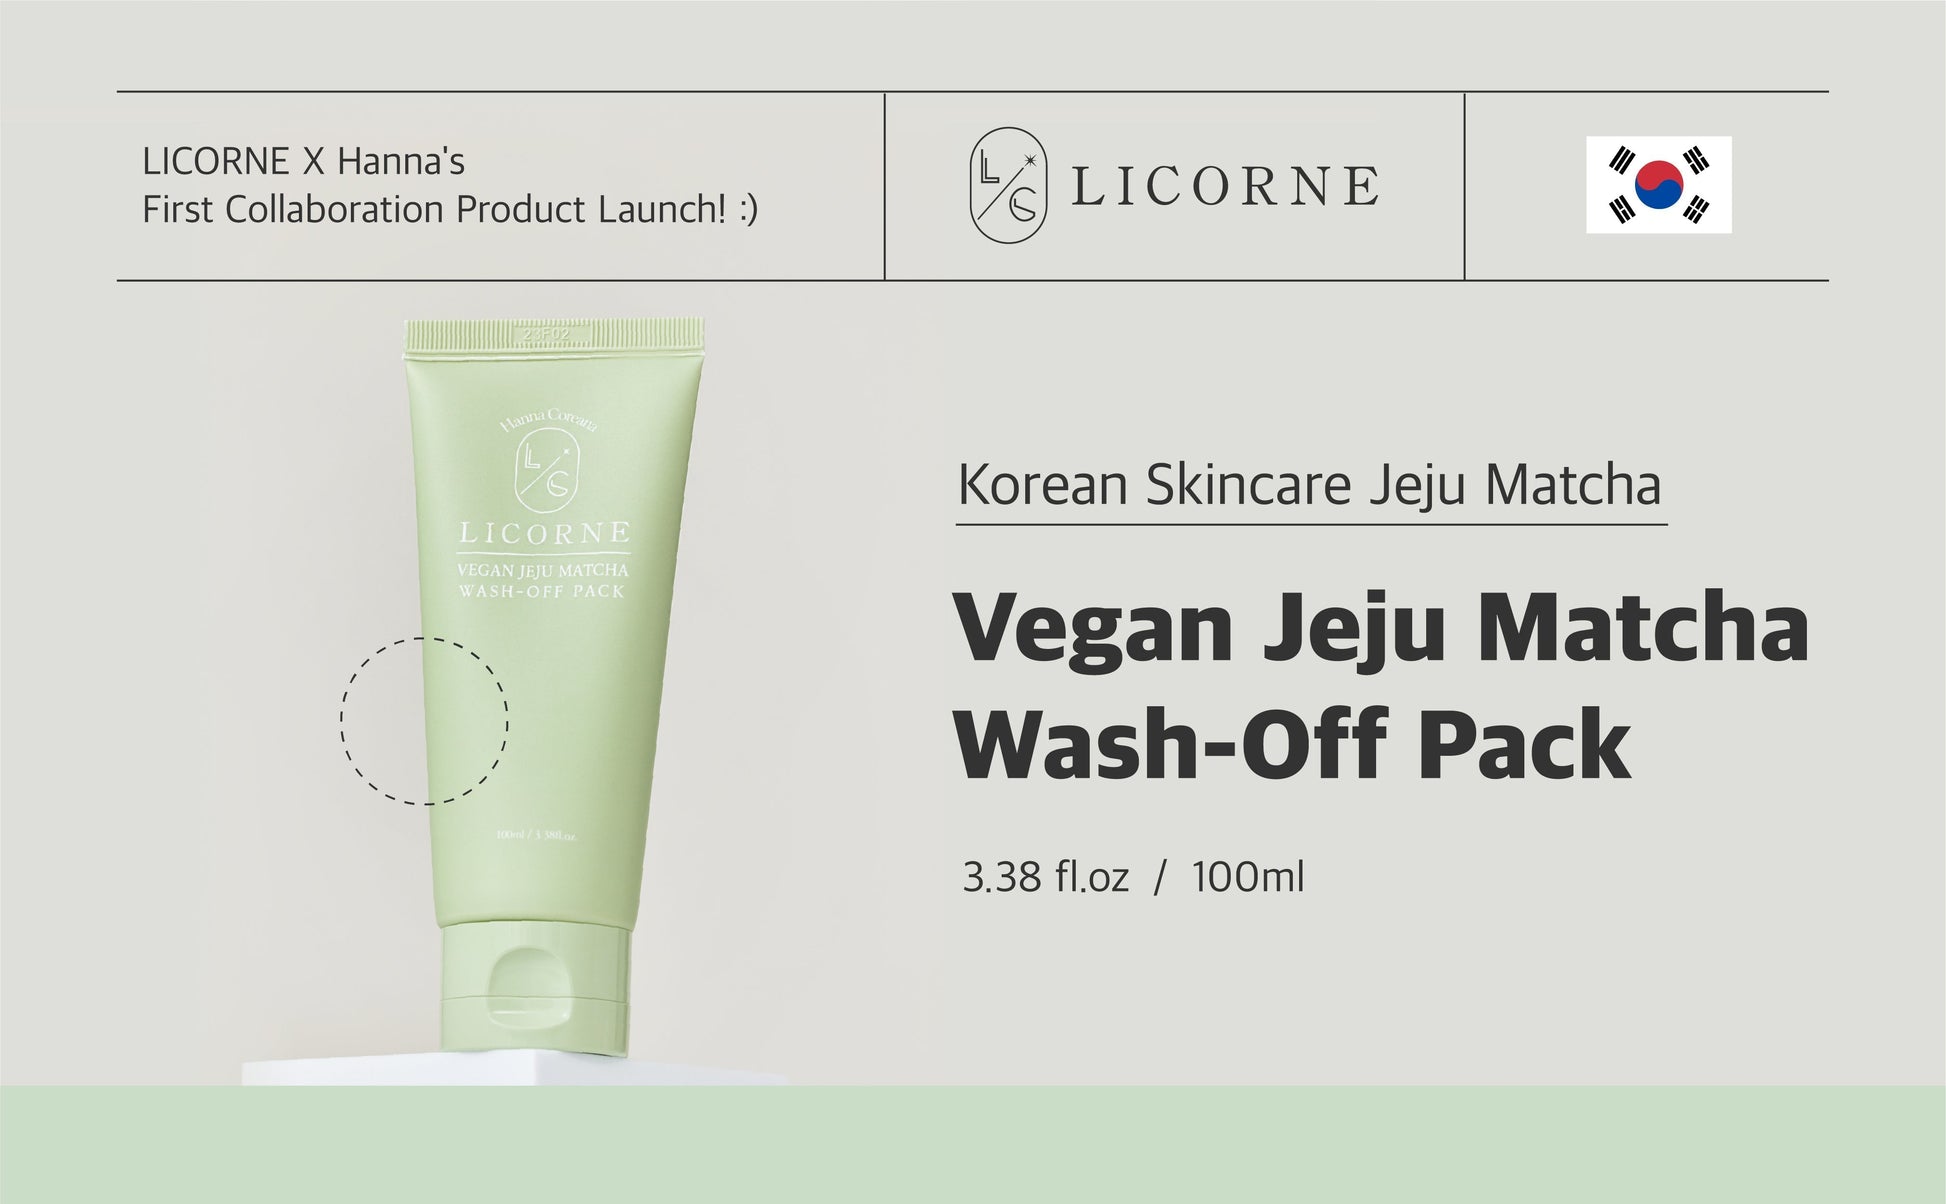 LICORNE Vegan Jeju Matcha wash-off Pack